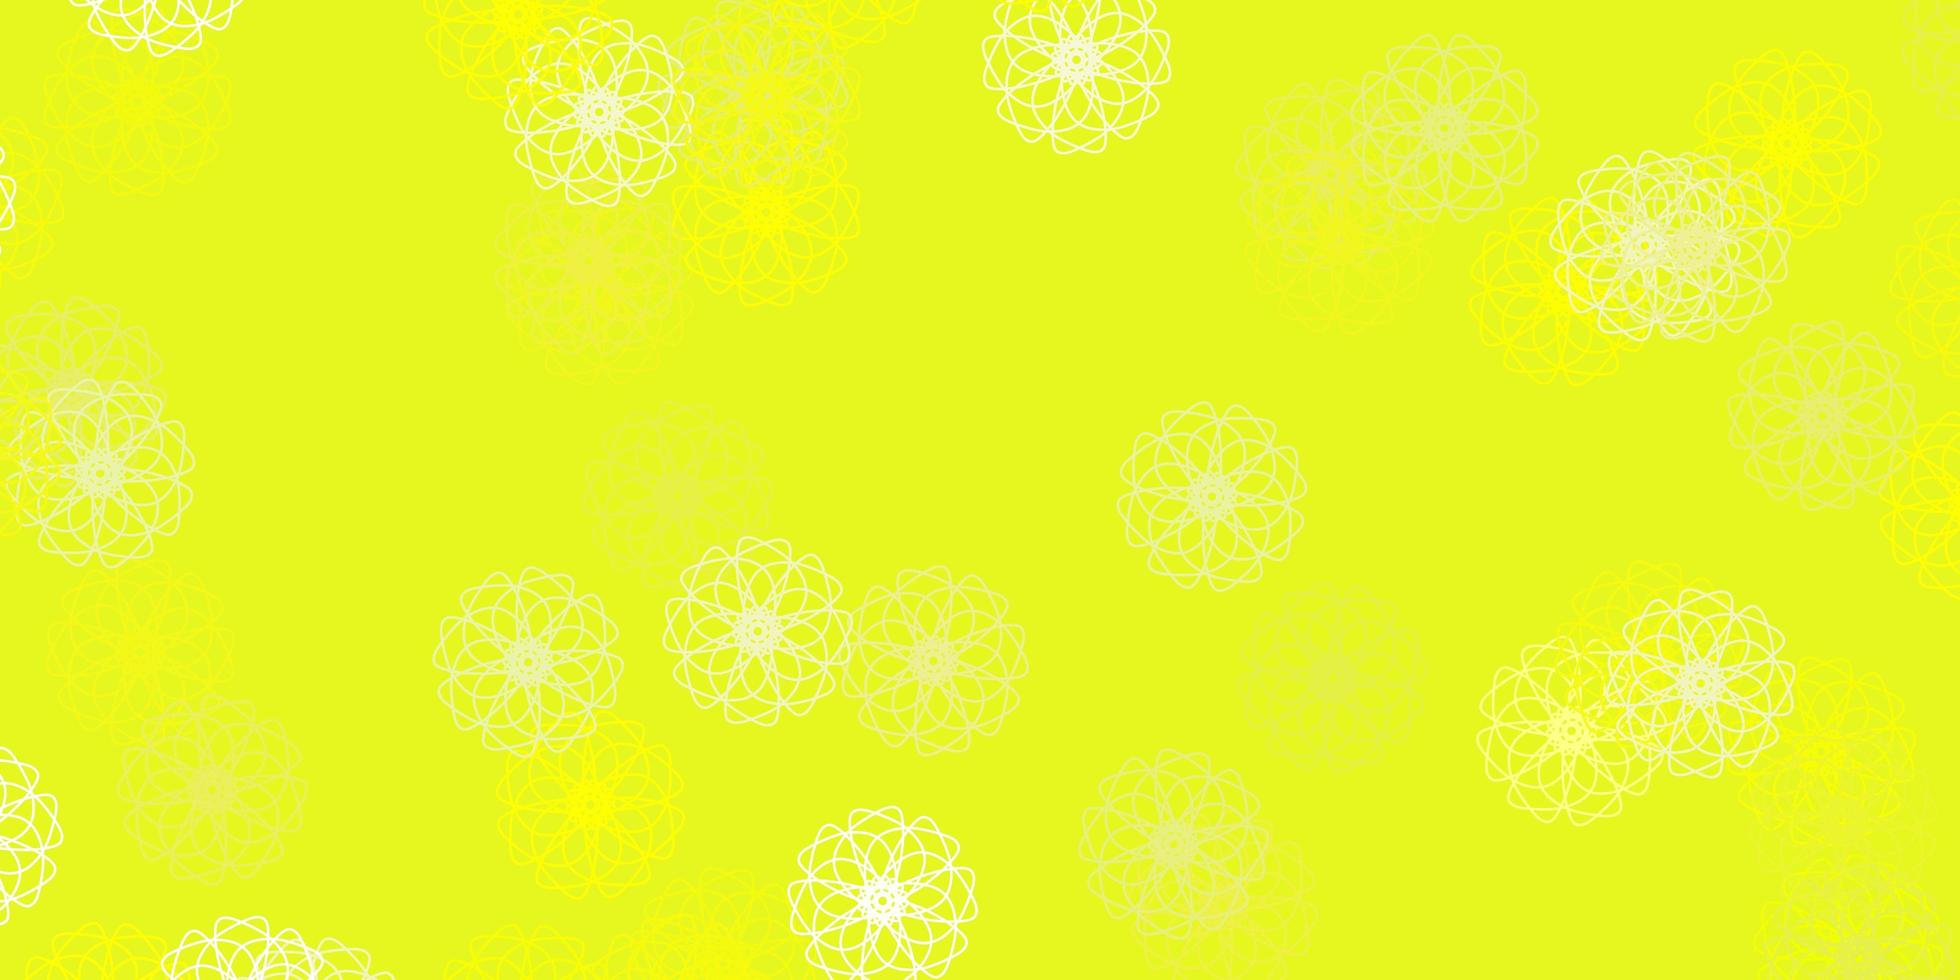 ljusgrön, gul vektor naturligt konstverk med blommor.